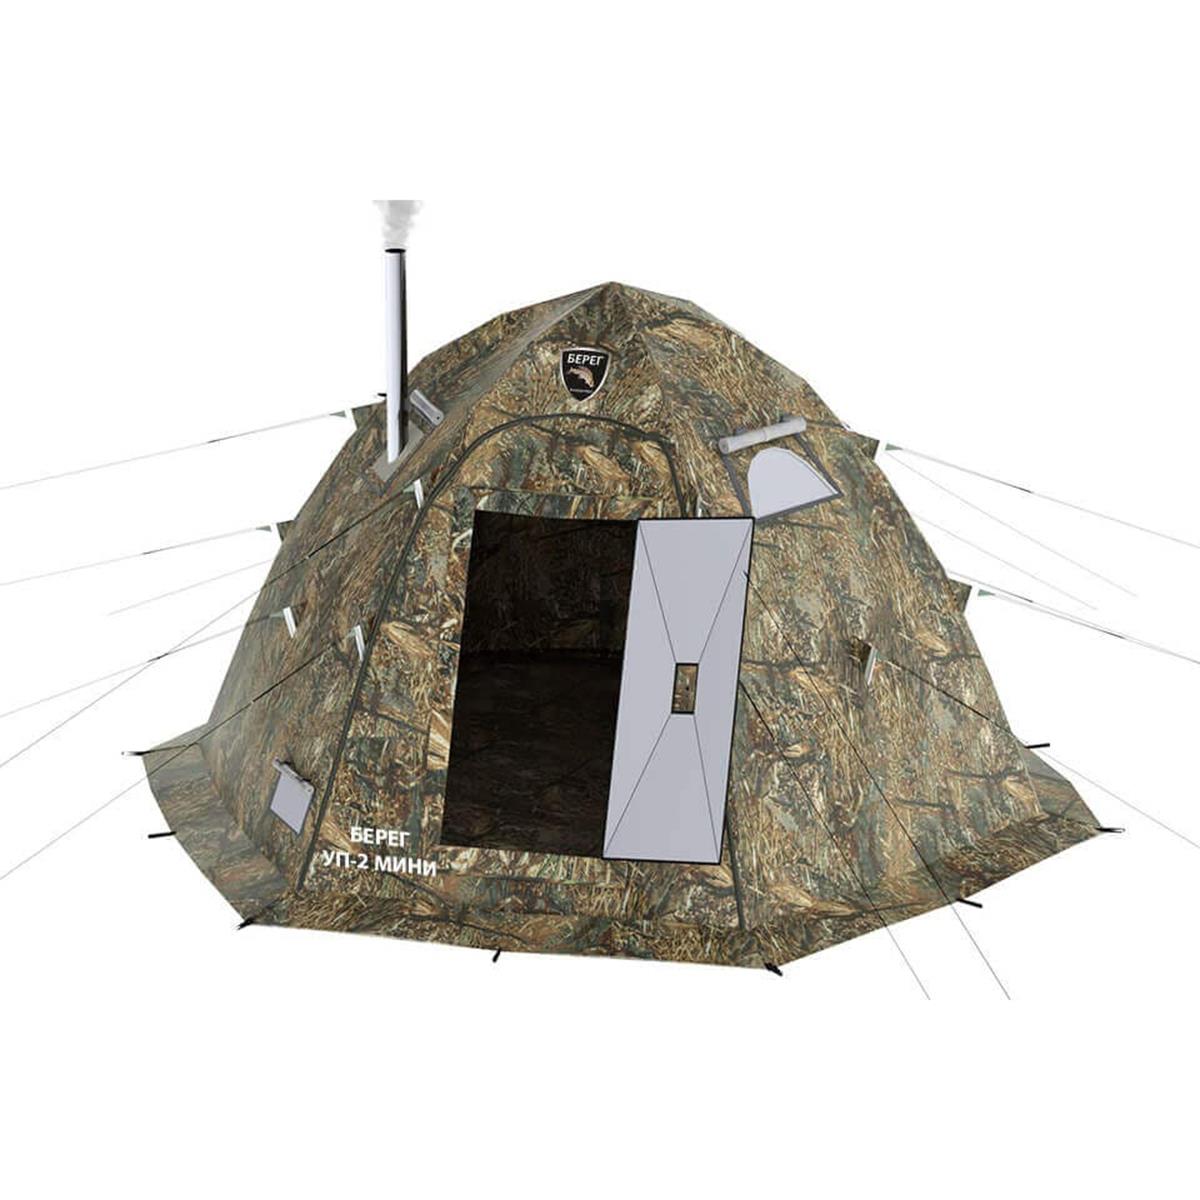 Универсальная палатка УП-2 мини Камыш, Берег металлические оцинкованные колышки комплект агро